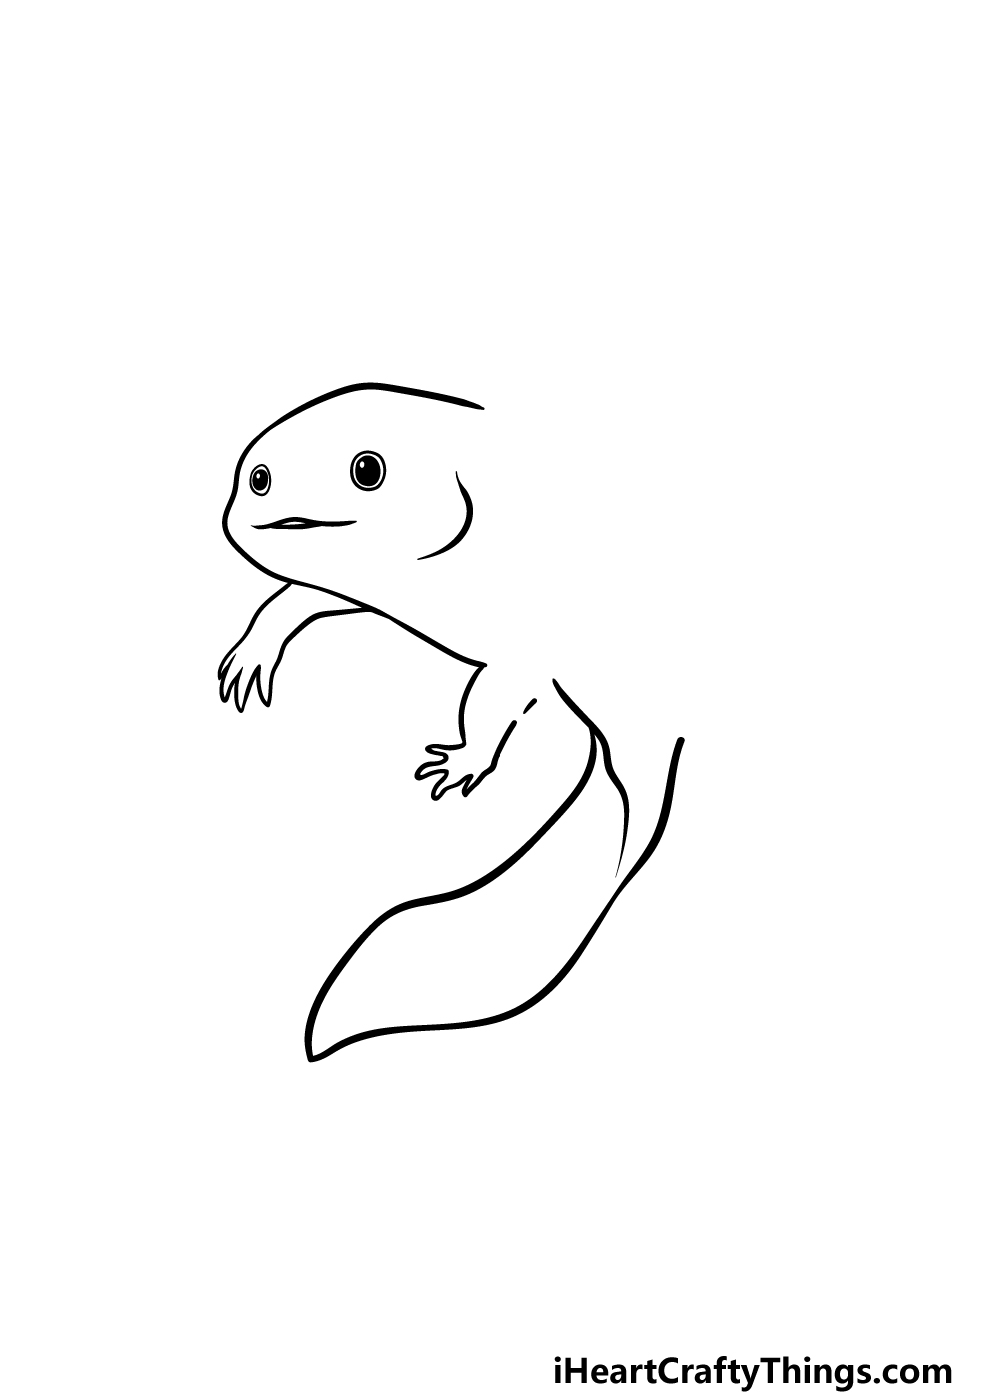 Drawing An Axolotl step 3